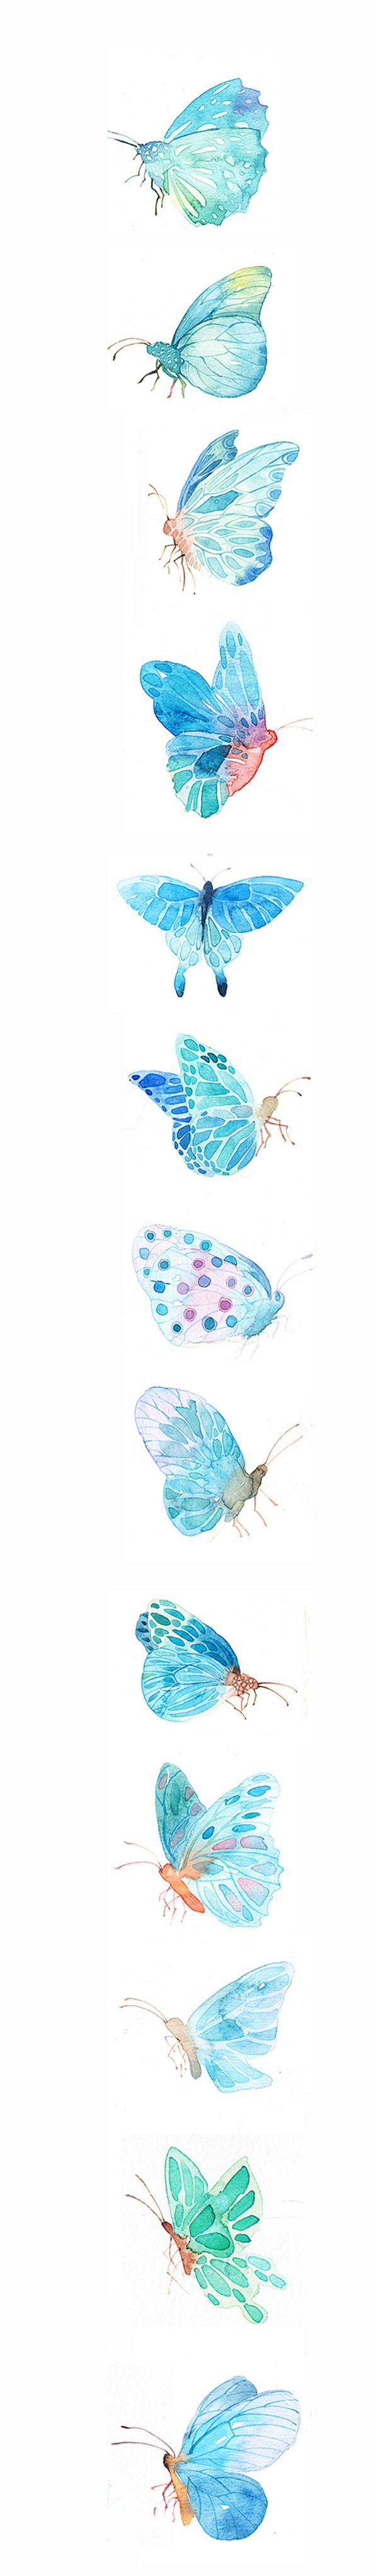 我爱的蝴蝶们~蓝蝴蝶在夏天会凉爽些吧~-...